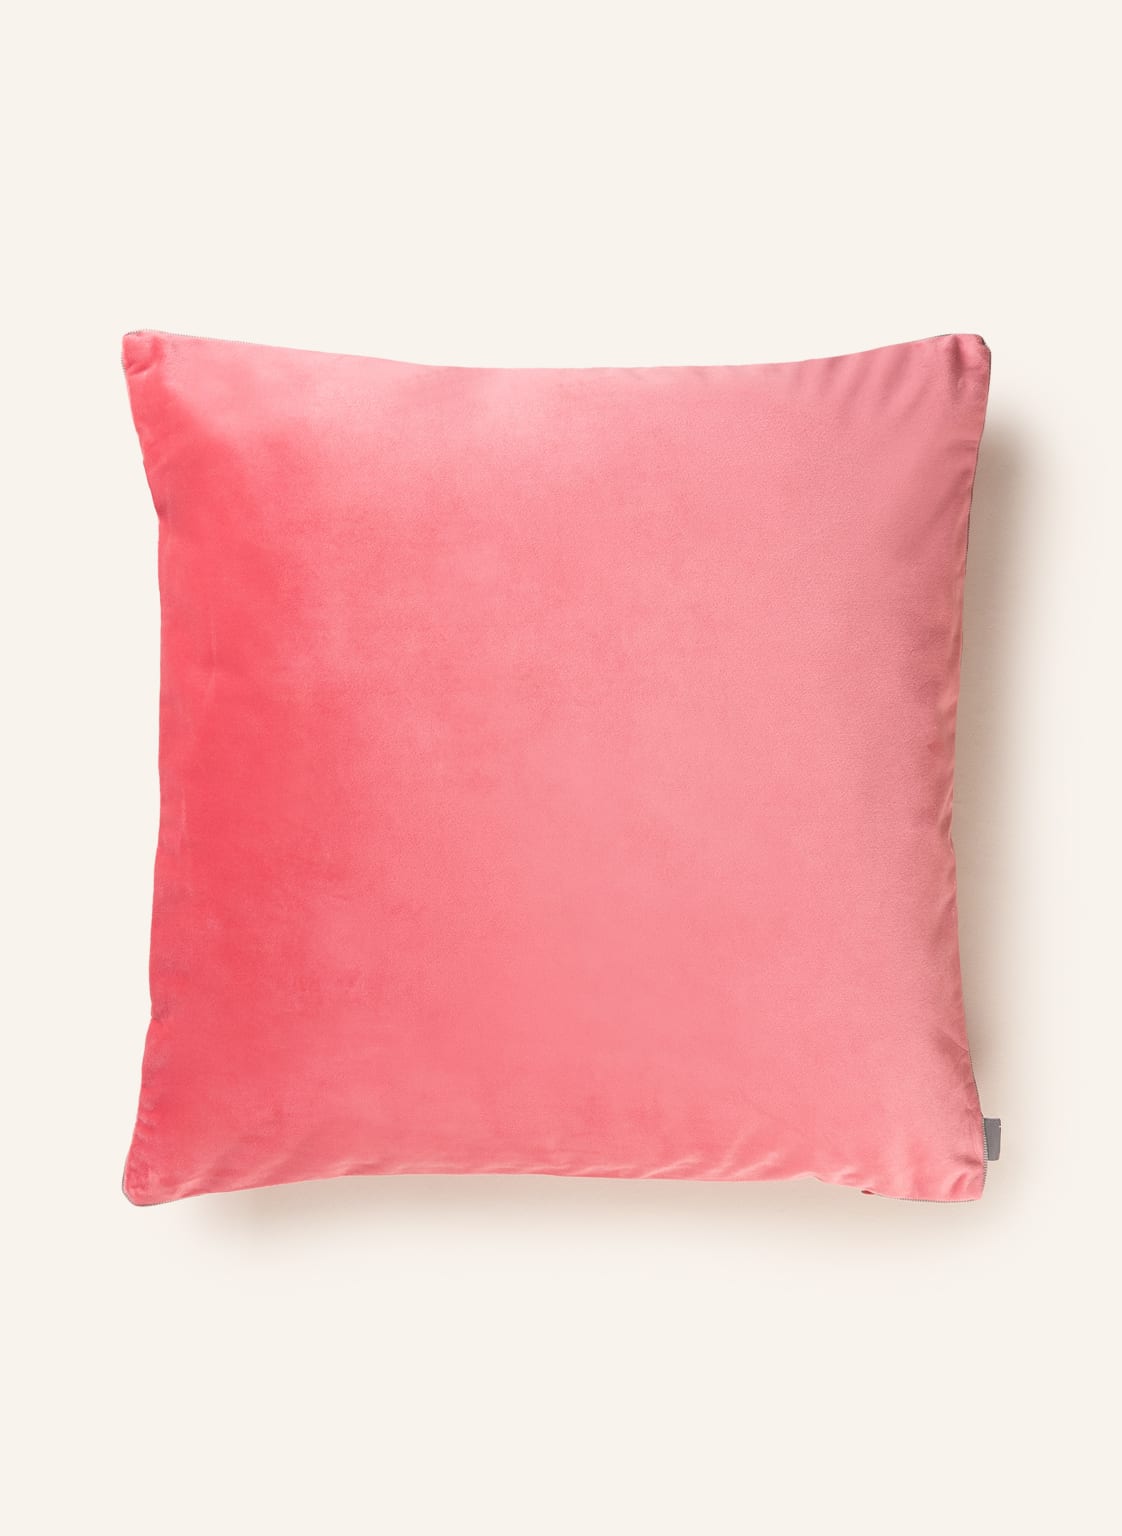 Zdjęcia - Poszewka na poduszkę Elegance Pad Dekoracyjna   Z Aksamitu rosa 